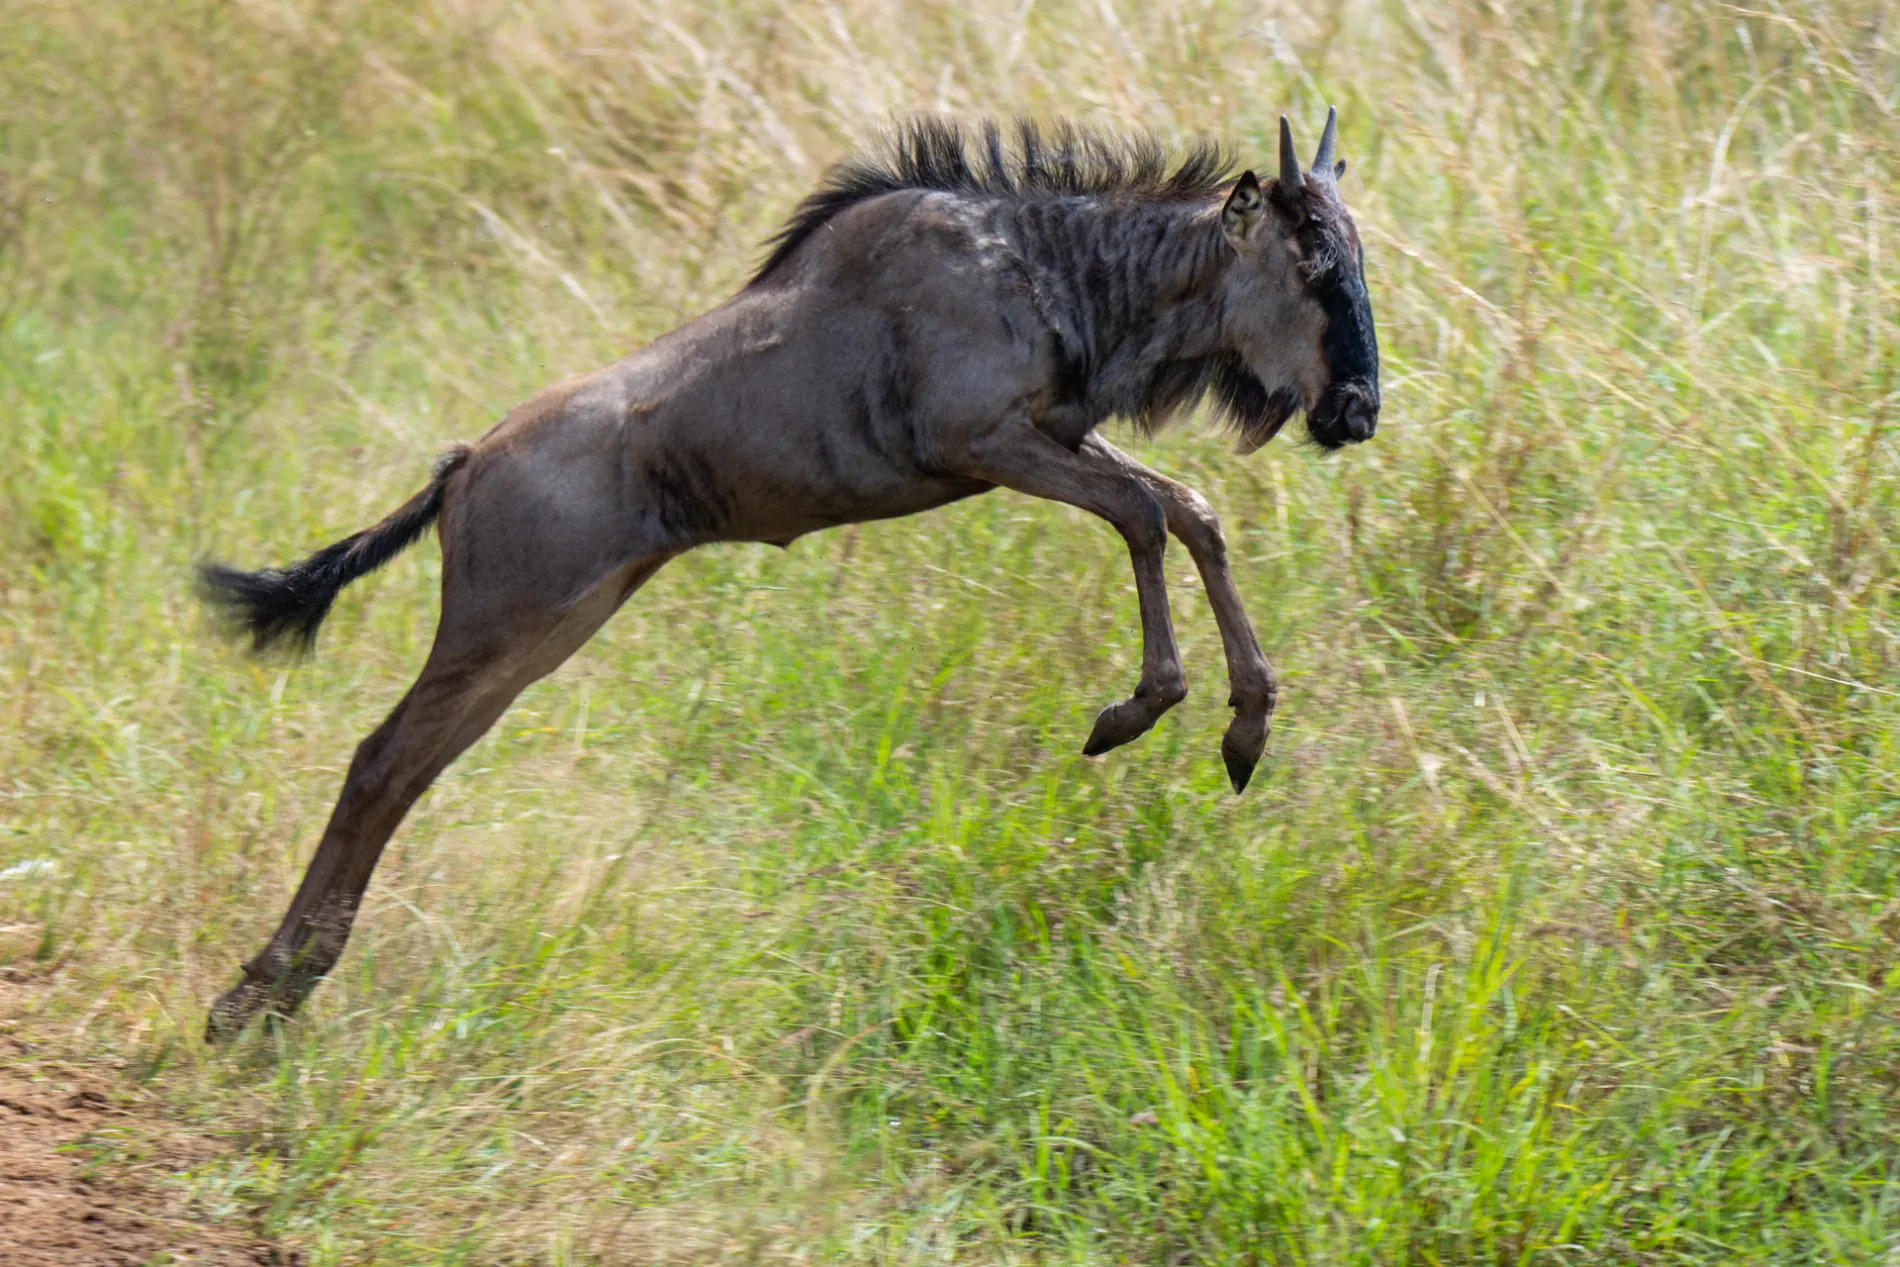 Wildebeest jump